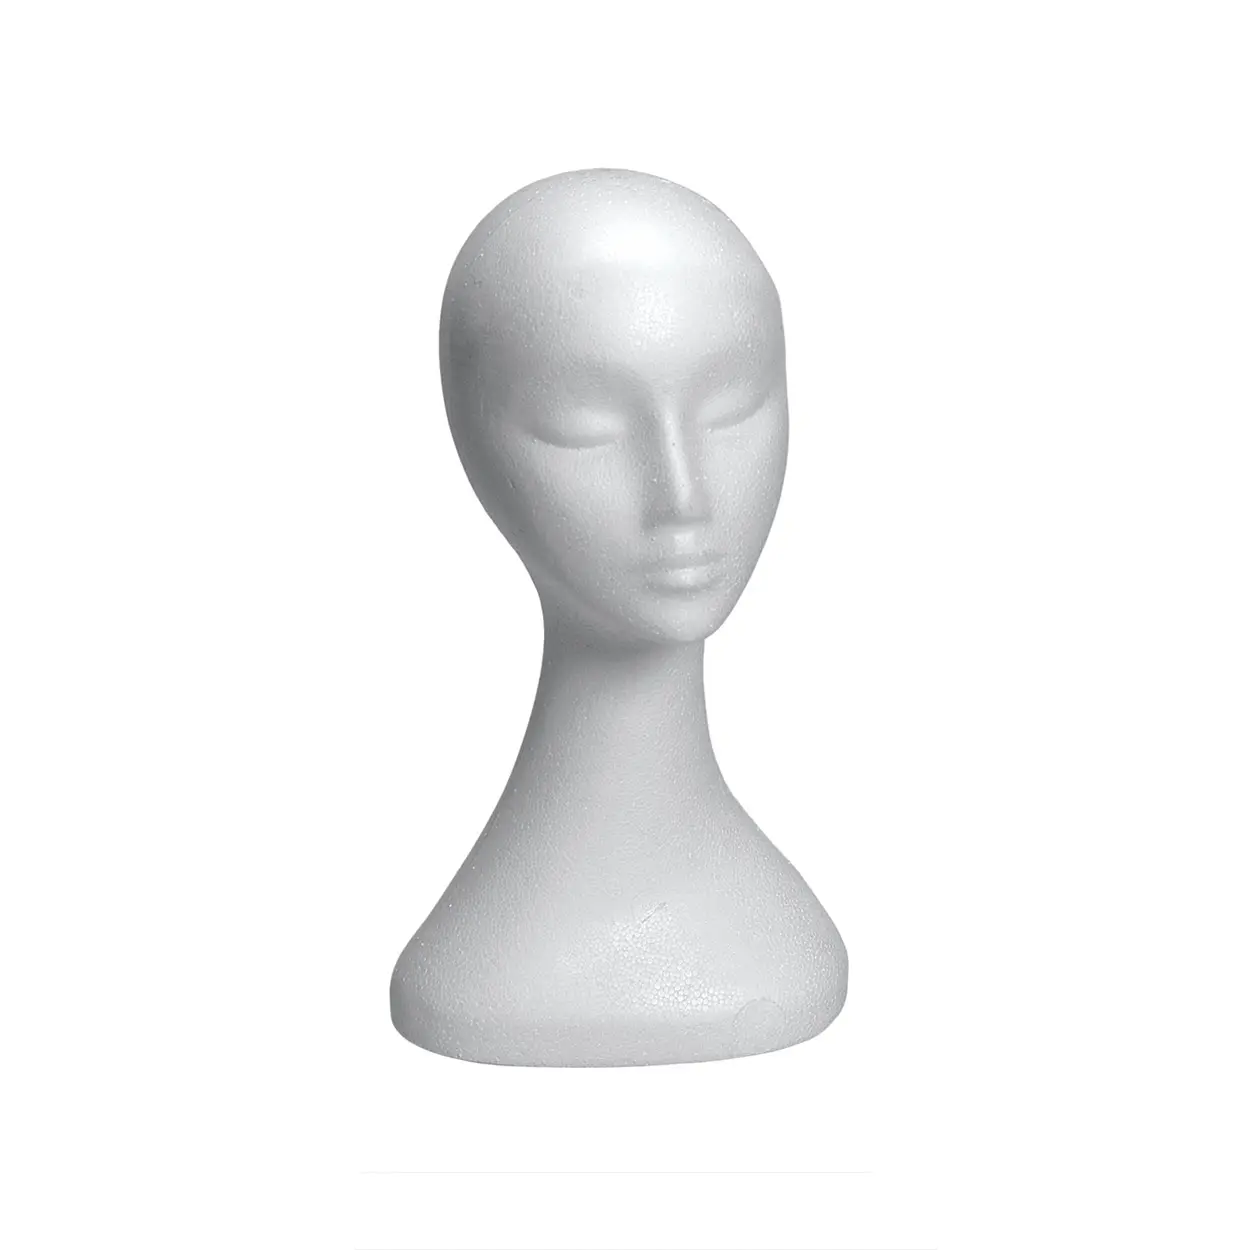 Groothandel polyfoam mannequin model heads goedkope piepschuim haar mannequin hoofd